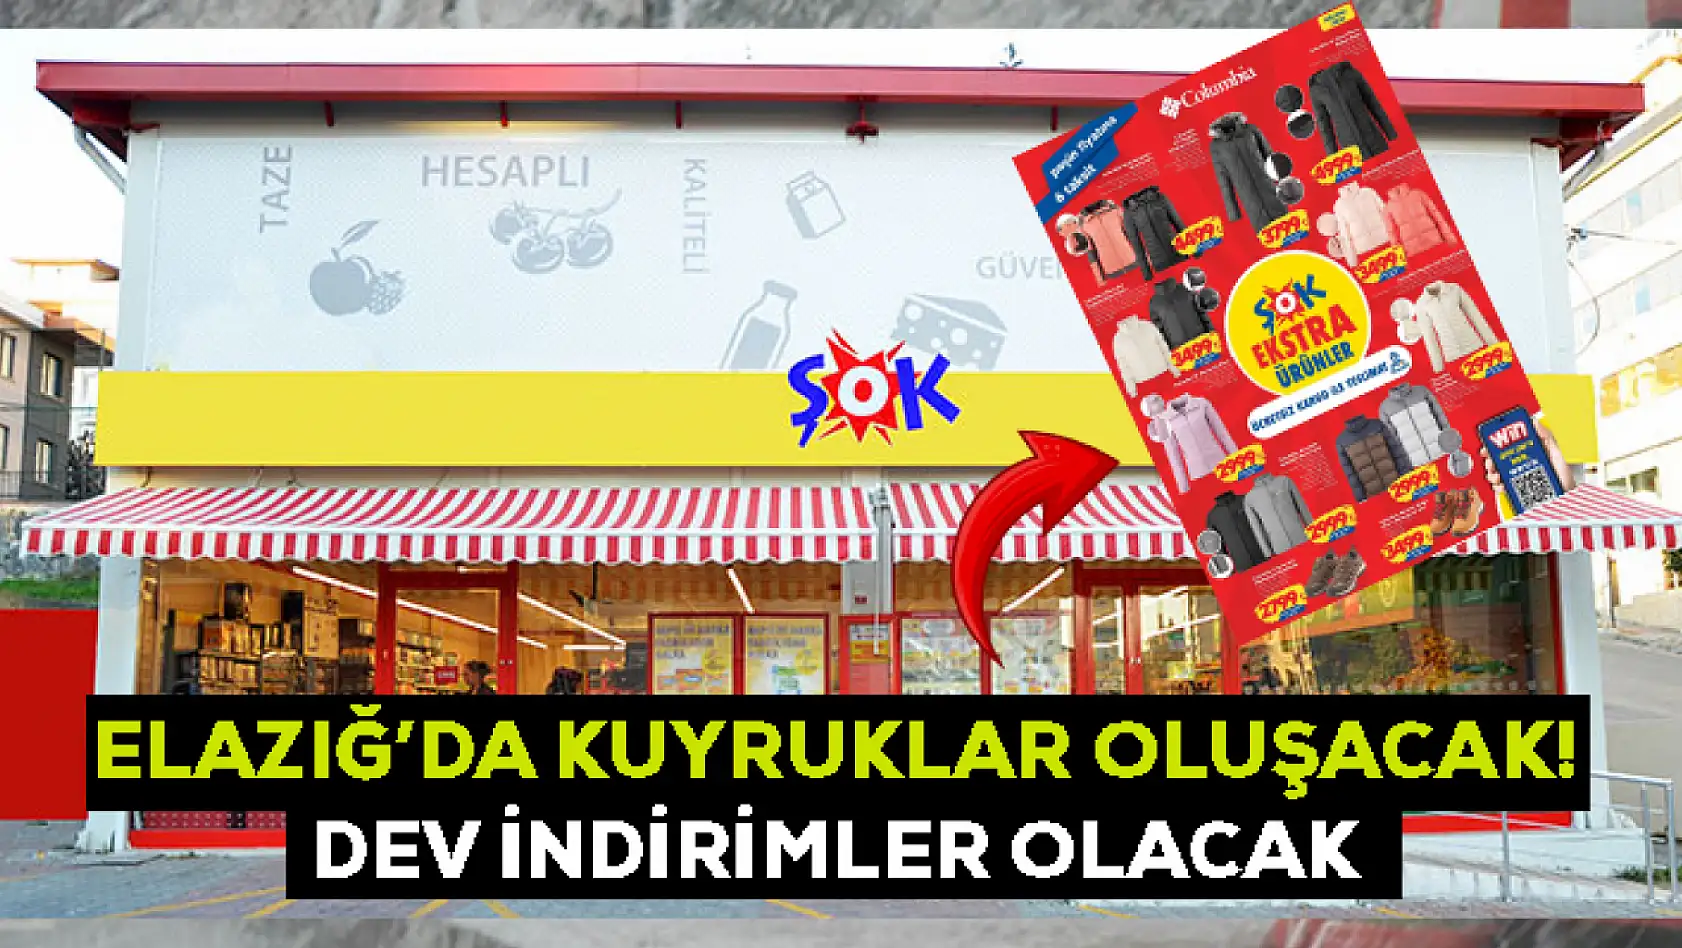 ŞOK Marketleri Elazığ'da dev indirimler başlattı: Fiyatları görenler 2'şer tane almak isteyecek